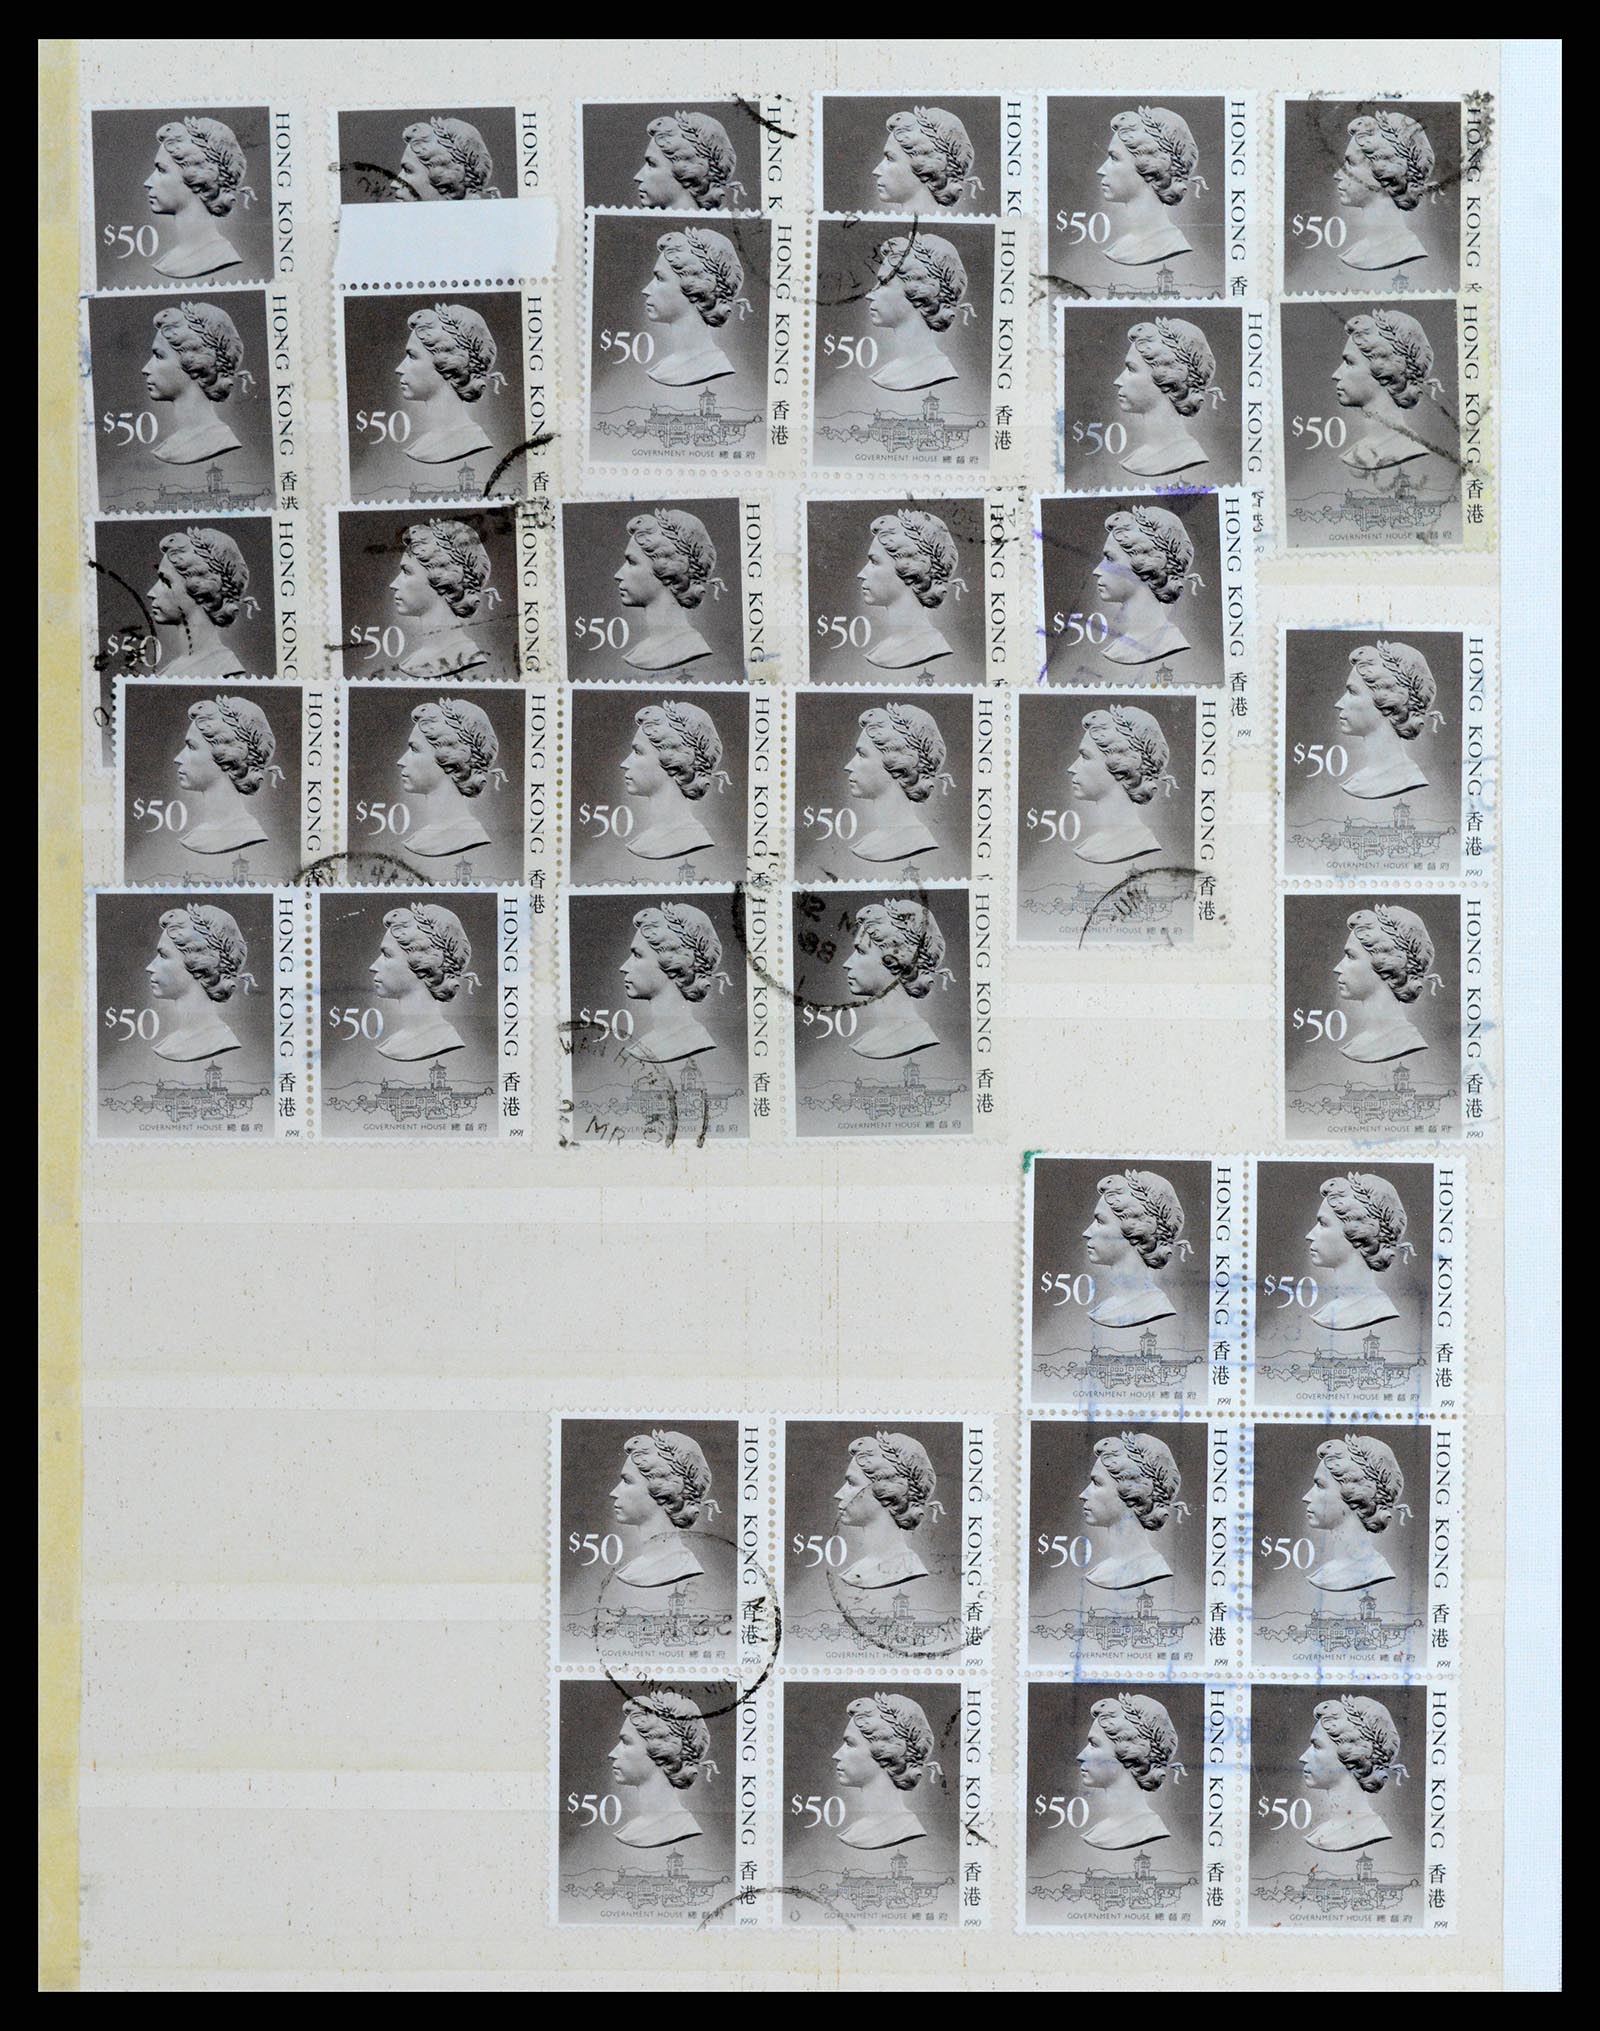 37358 028 - Stamp collection 37358 Hong Kong 1861-1997.